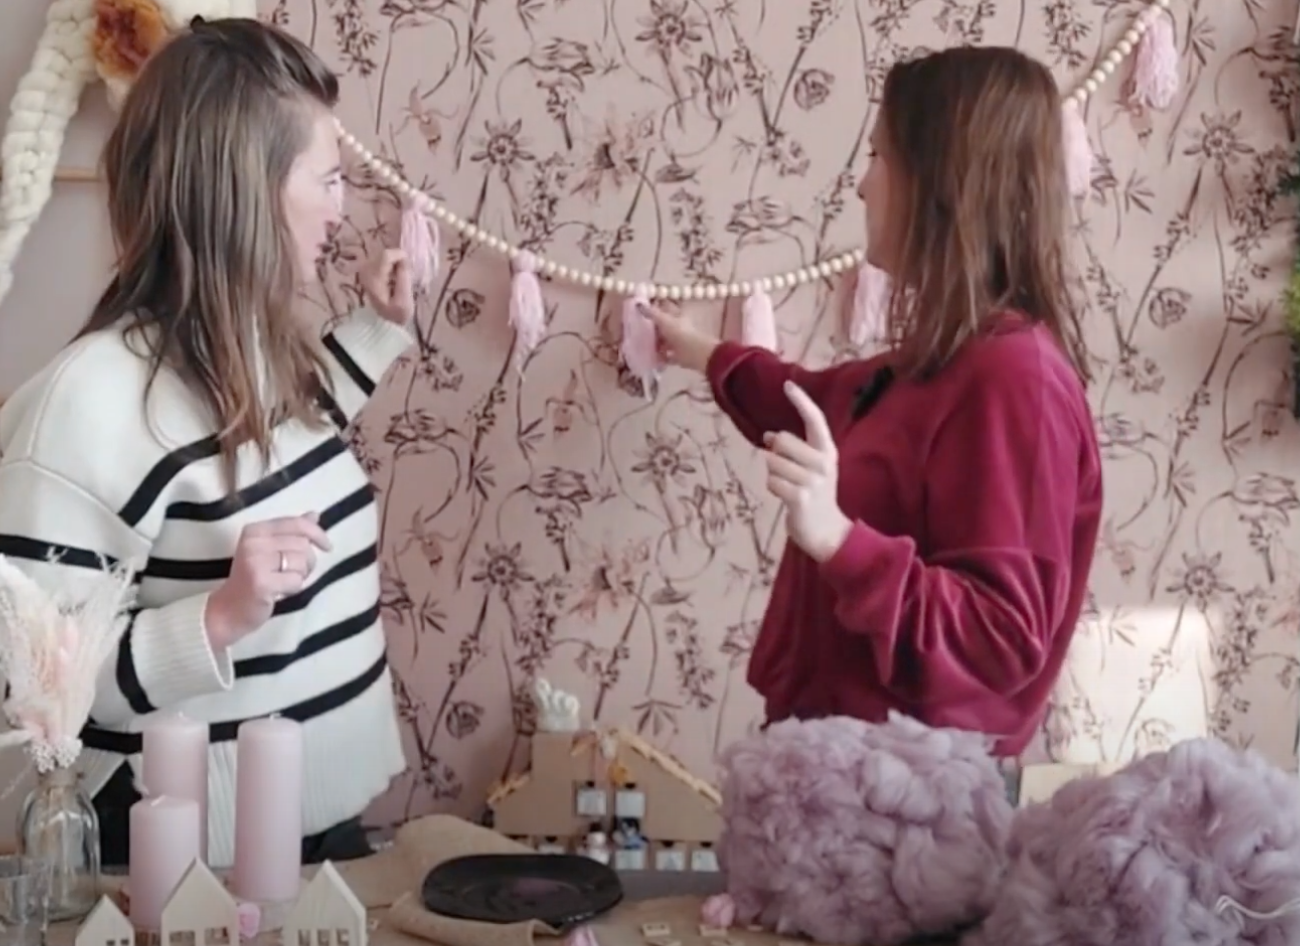 Sarah en Sarah van september18 laten zien hoe de babyshower versierd kan worden met doe het zelf ideeën zoals een slinger.